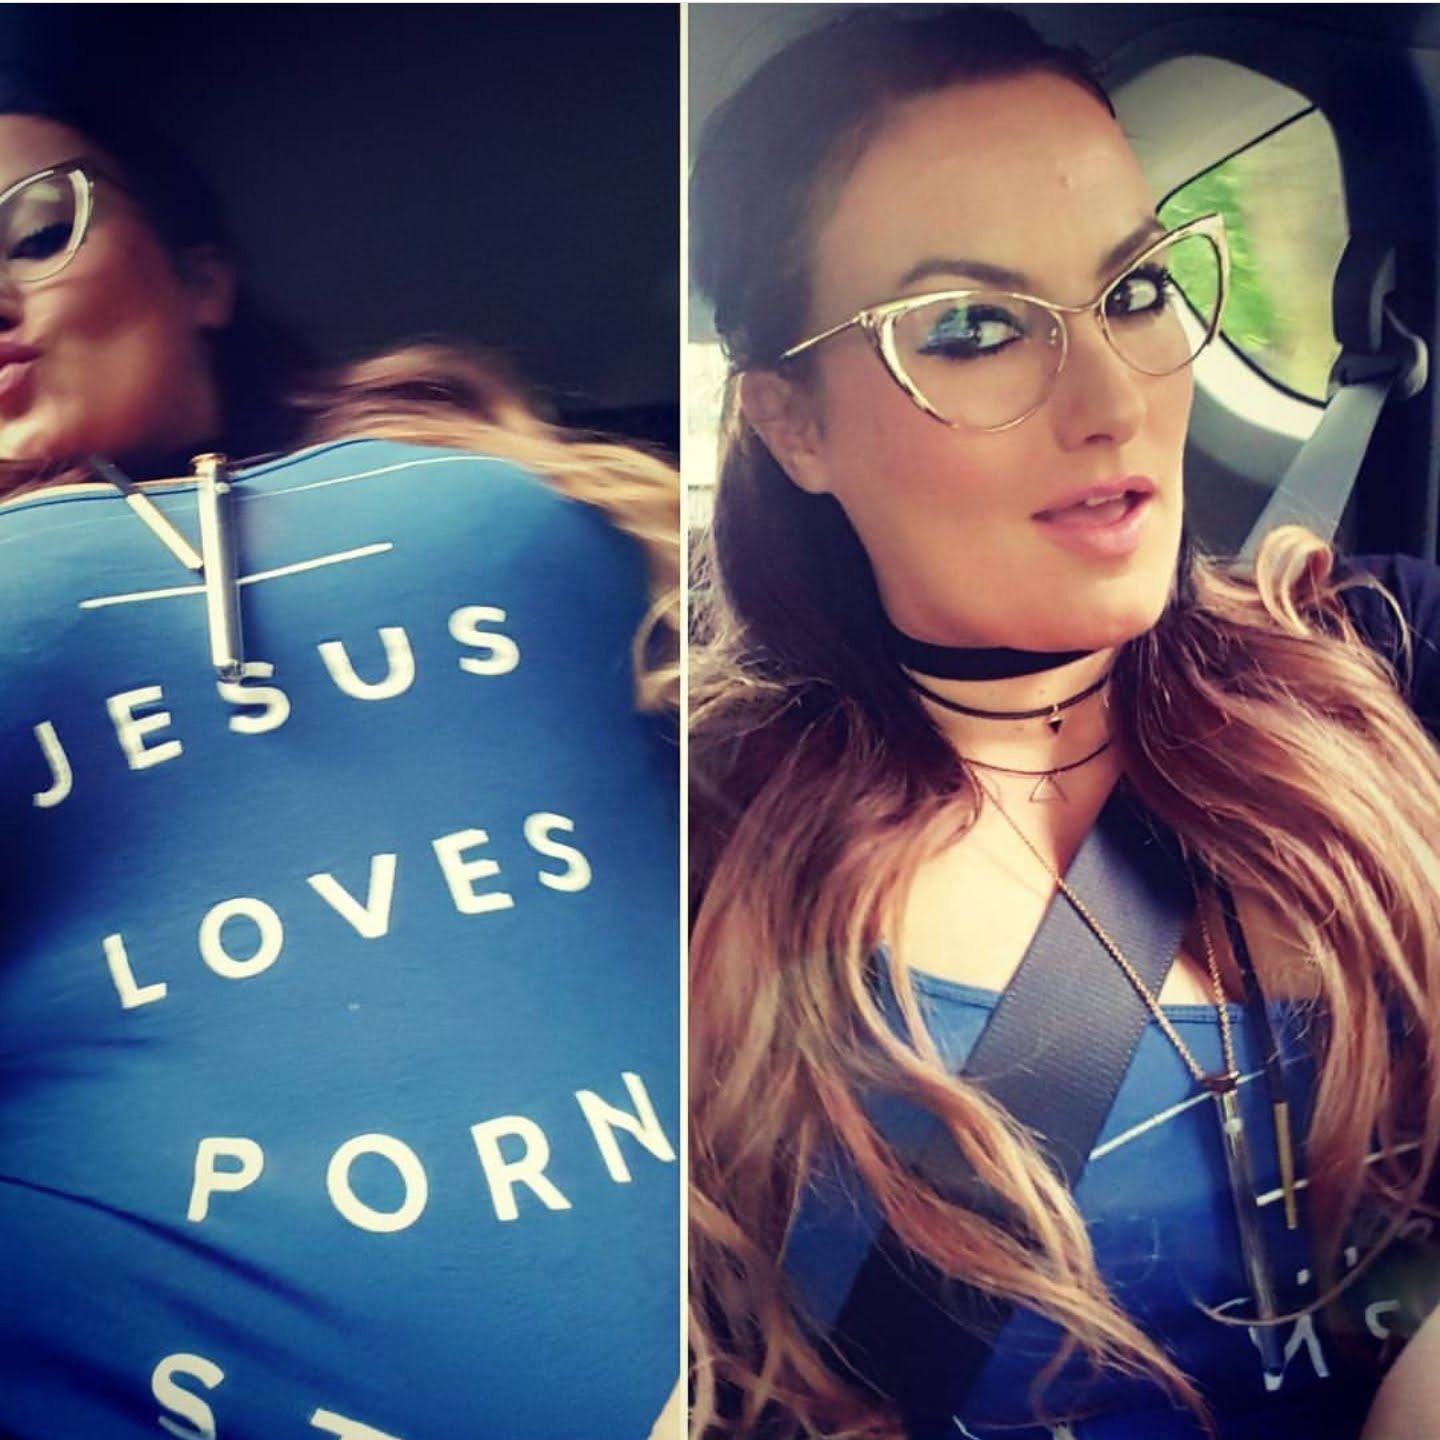 "jesus loves porn"